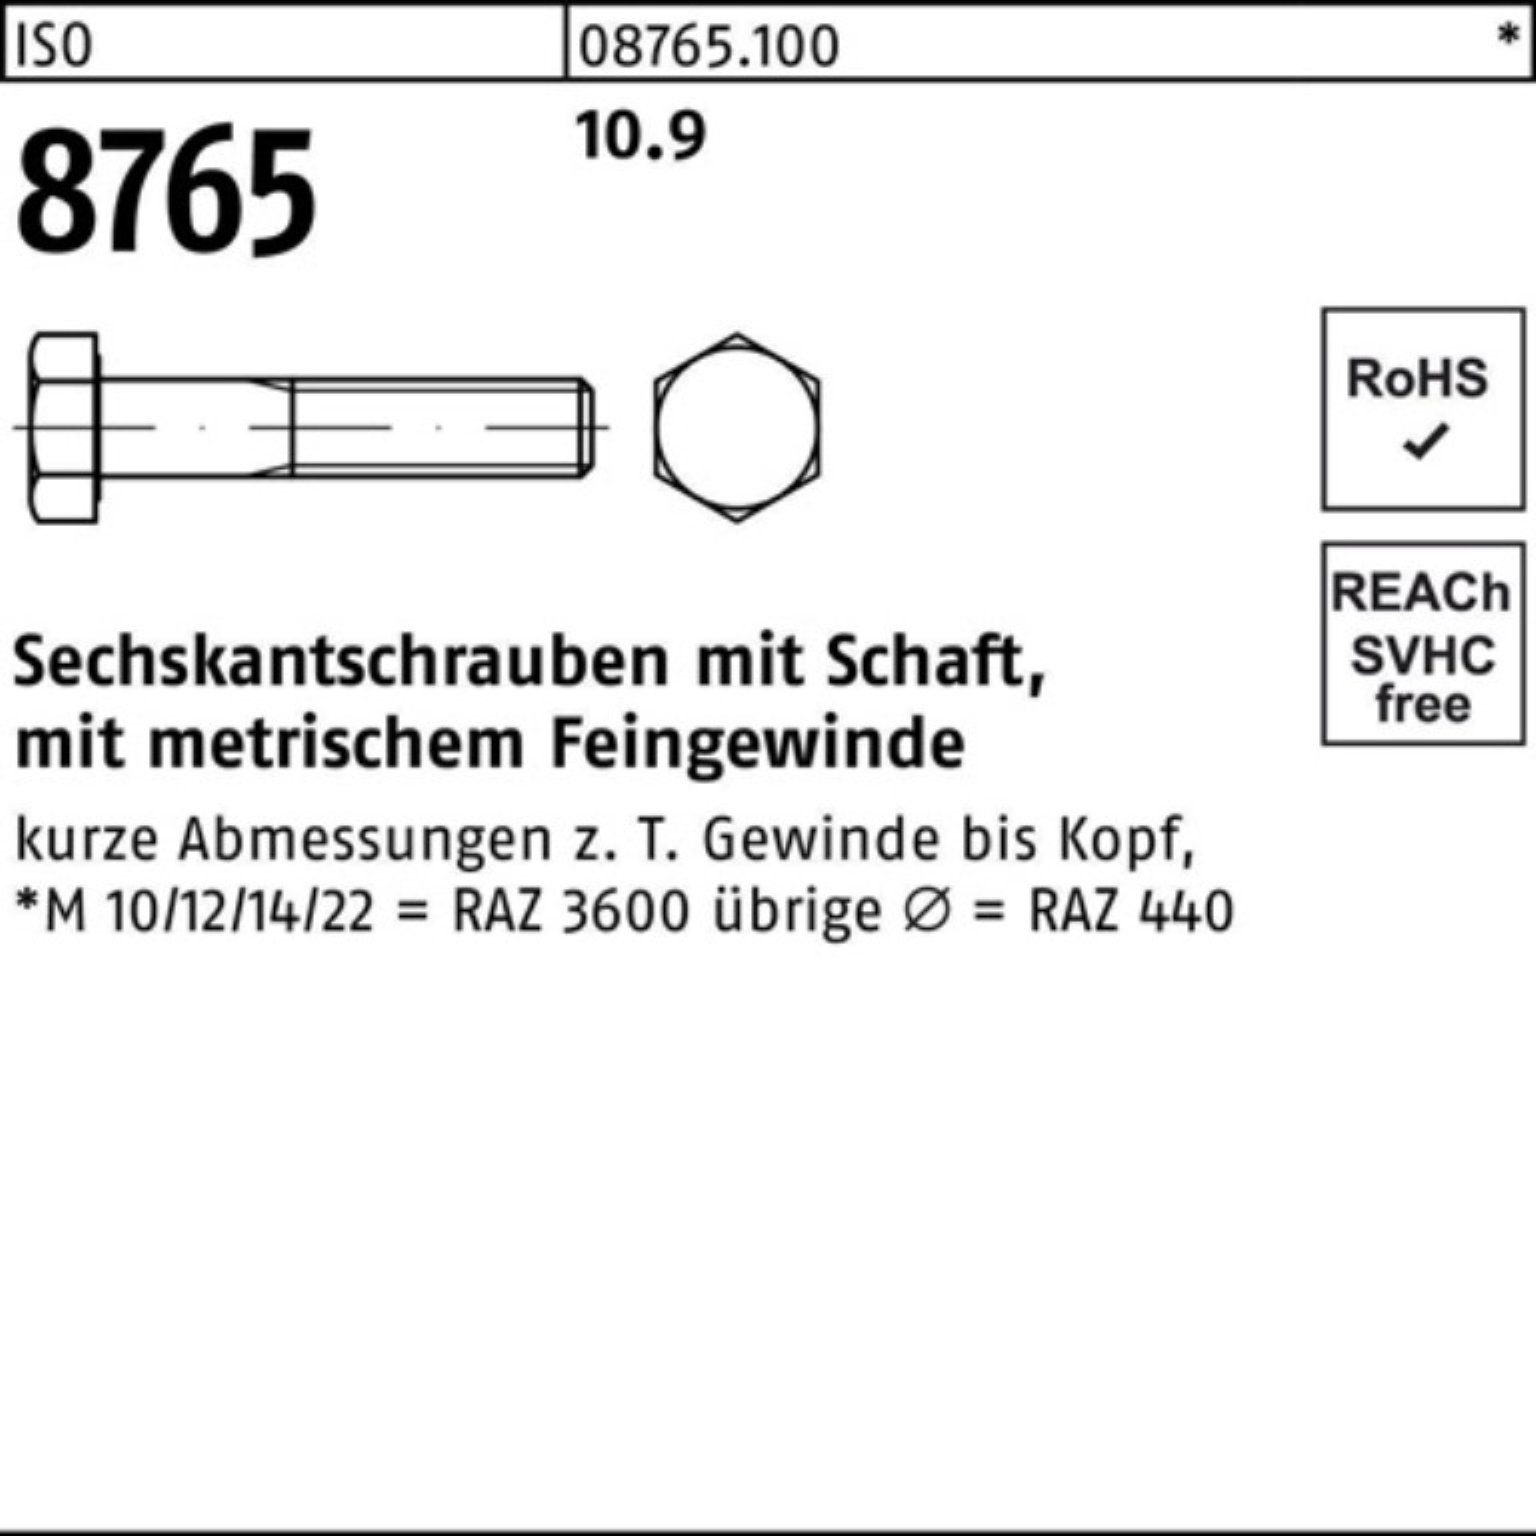 Sechskantschraube Sechskantschraube 8765 M16x1,5x 85 Stüc Schaft 25 Reyher 10.9 Pack ISO 100er